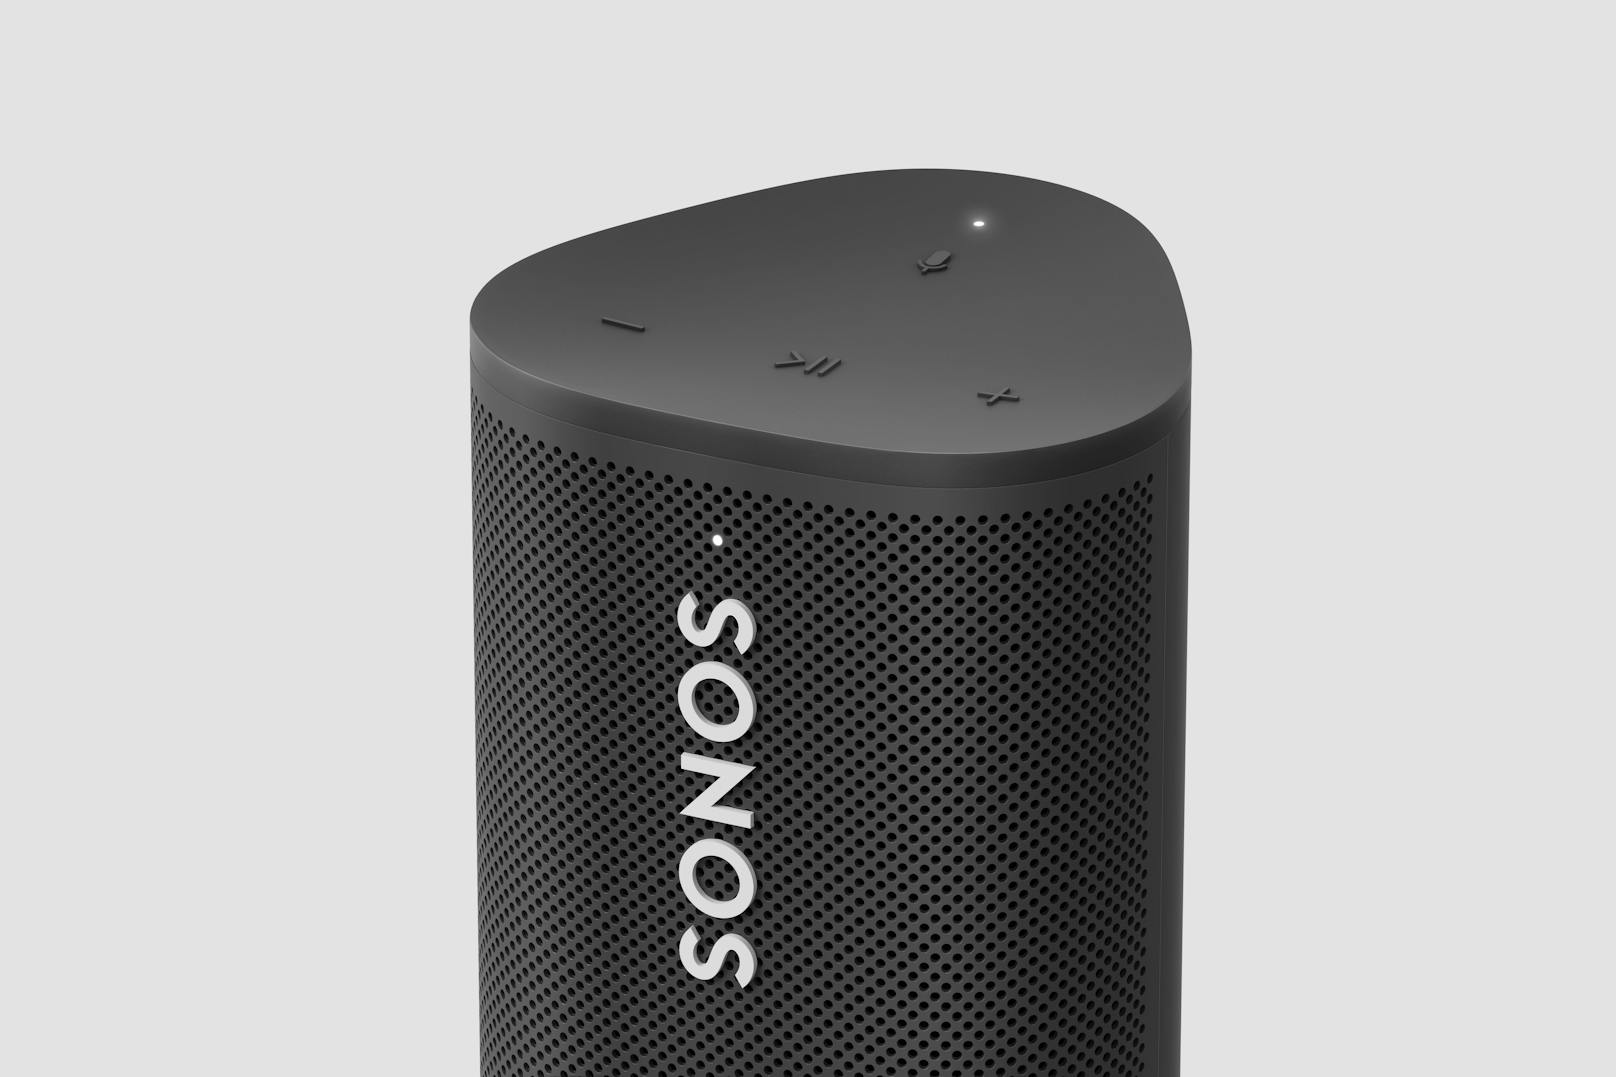 Außerdem macht es der Roam möglich, mehrere Lautsprecher mit ihm zu gruppieren und dabei auf allen Geräten per Bluetooth Musik zu streamen.